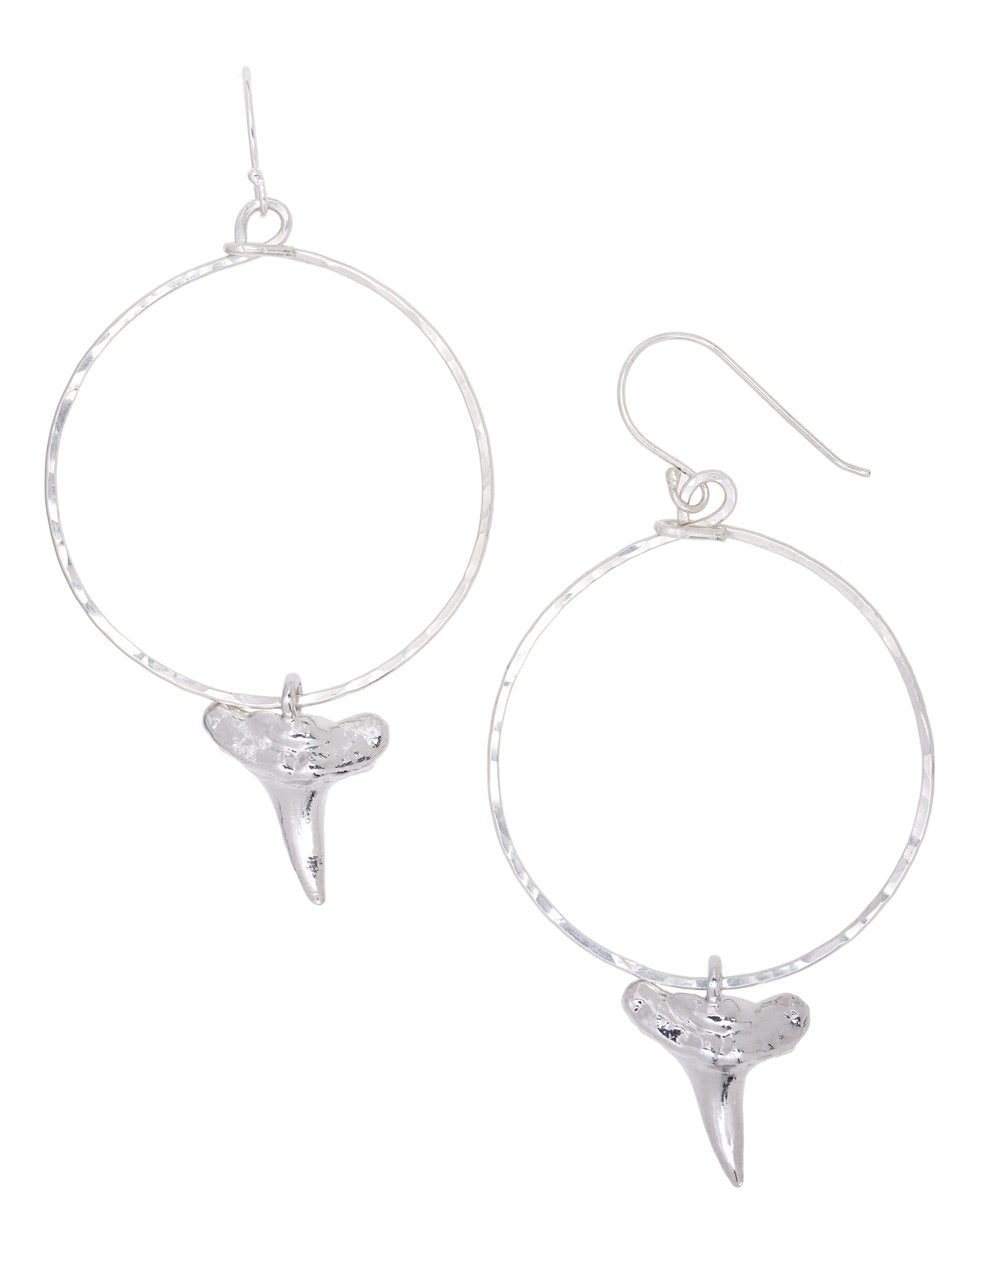 Shark’s Tooth Hammered hoop earrings